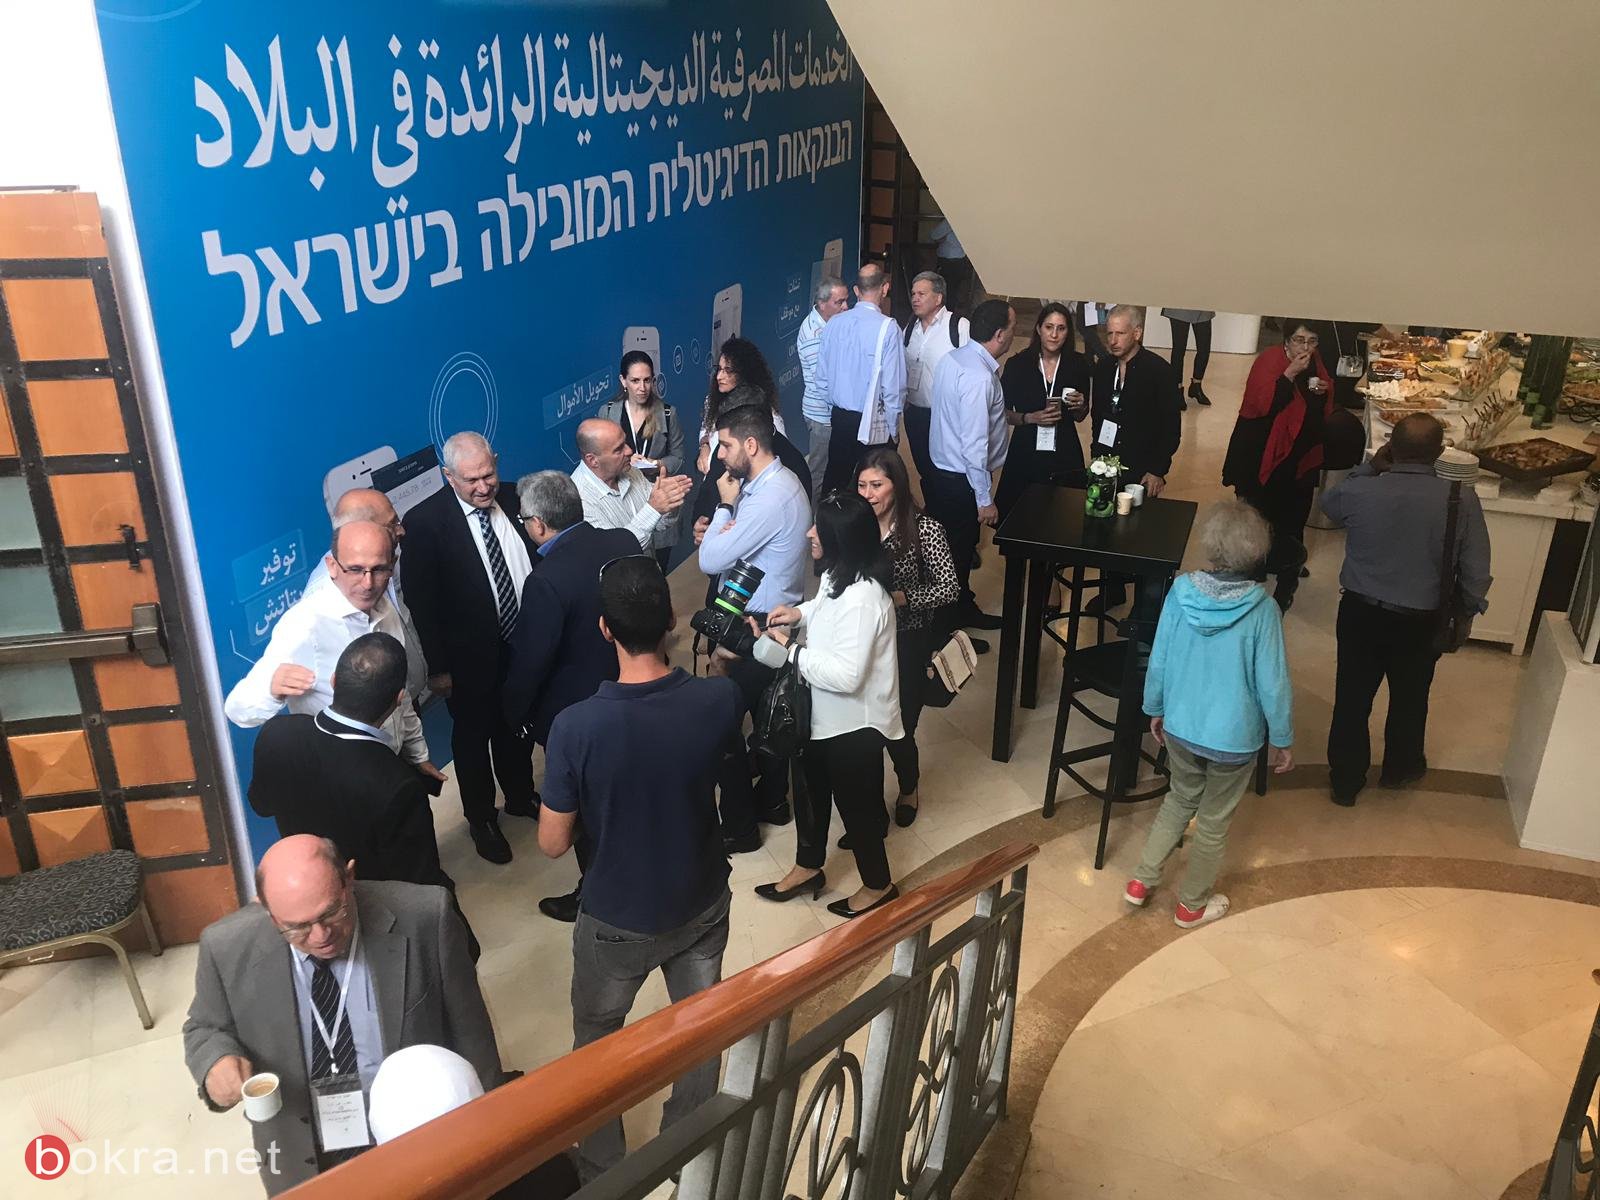  انطلاق أعمال "مؤتمر الاقتصاد في المجتمع العربي" لـ TheMarker وبنك لئومي في الناصرة -27